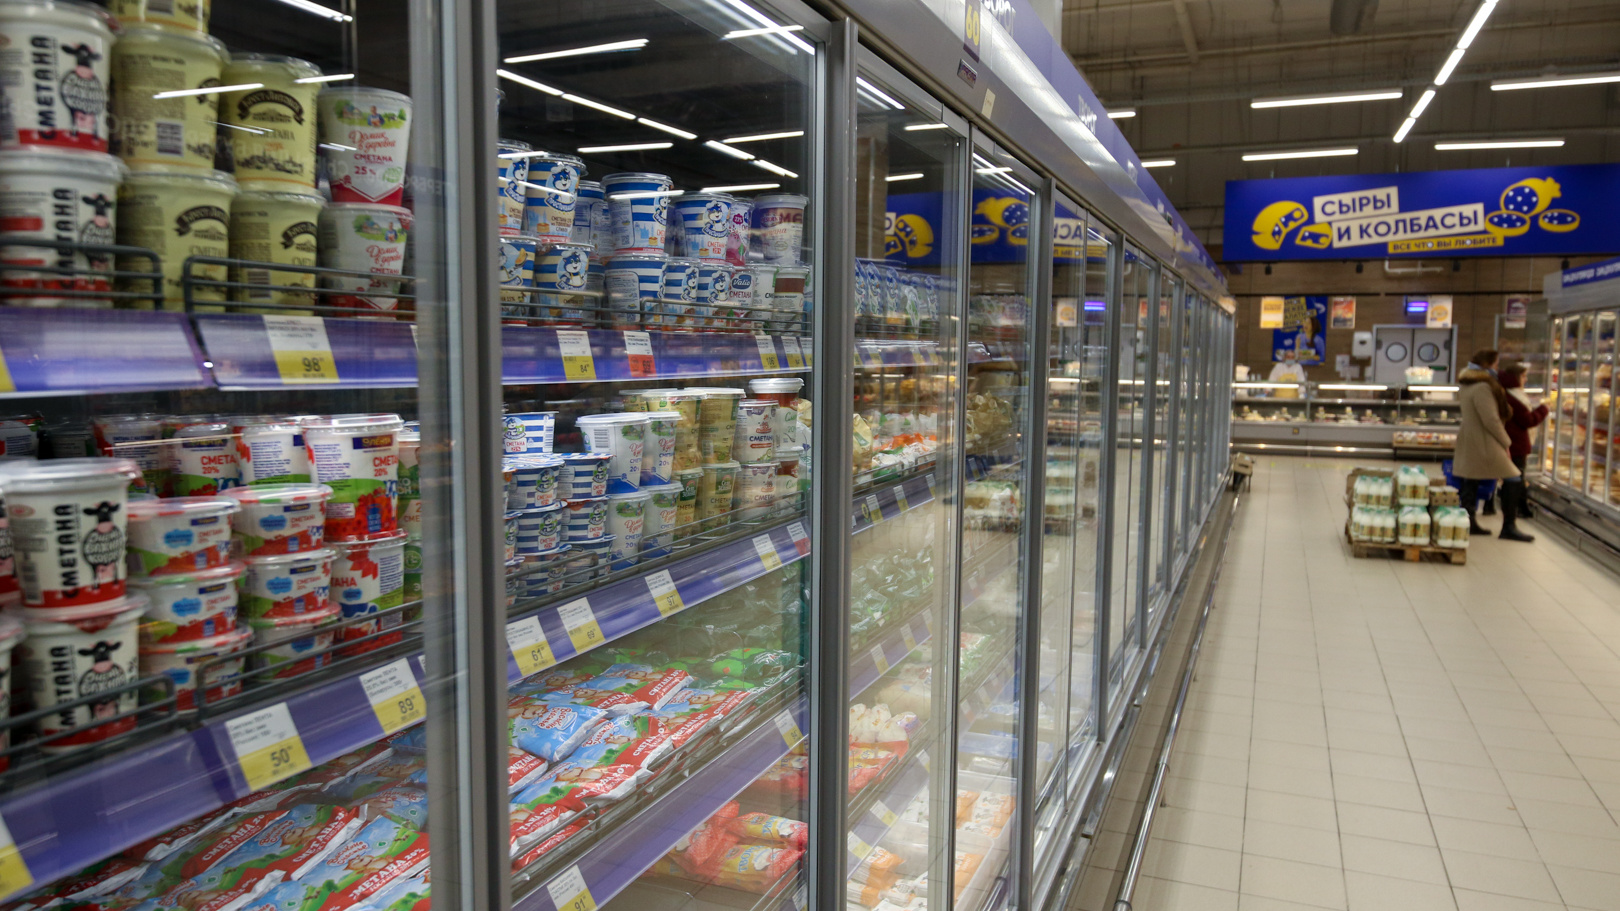 Сахар — плюс 45%, масло — 28%: изучаем, насколько сильно взлетели цены на продукты в Татарстане